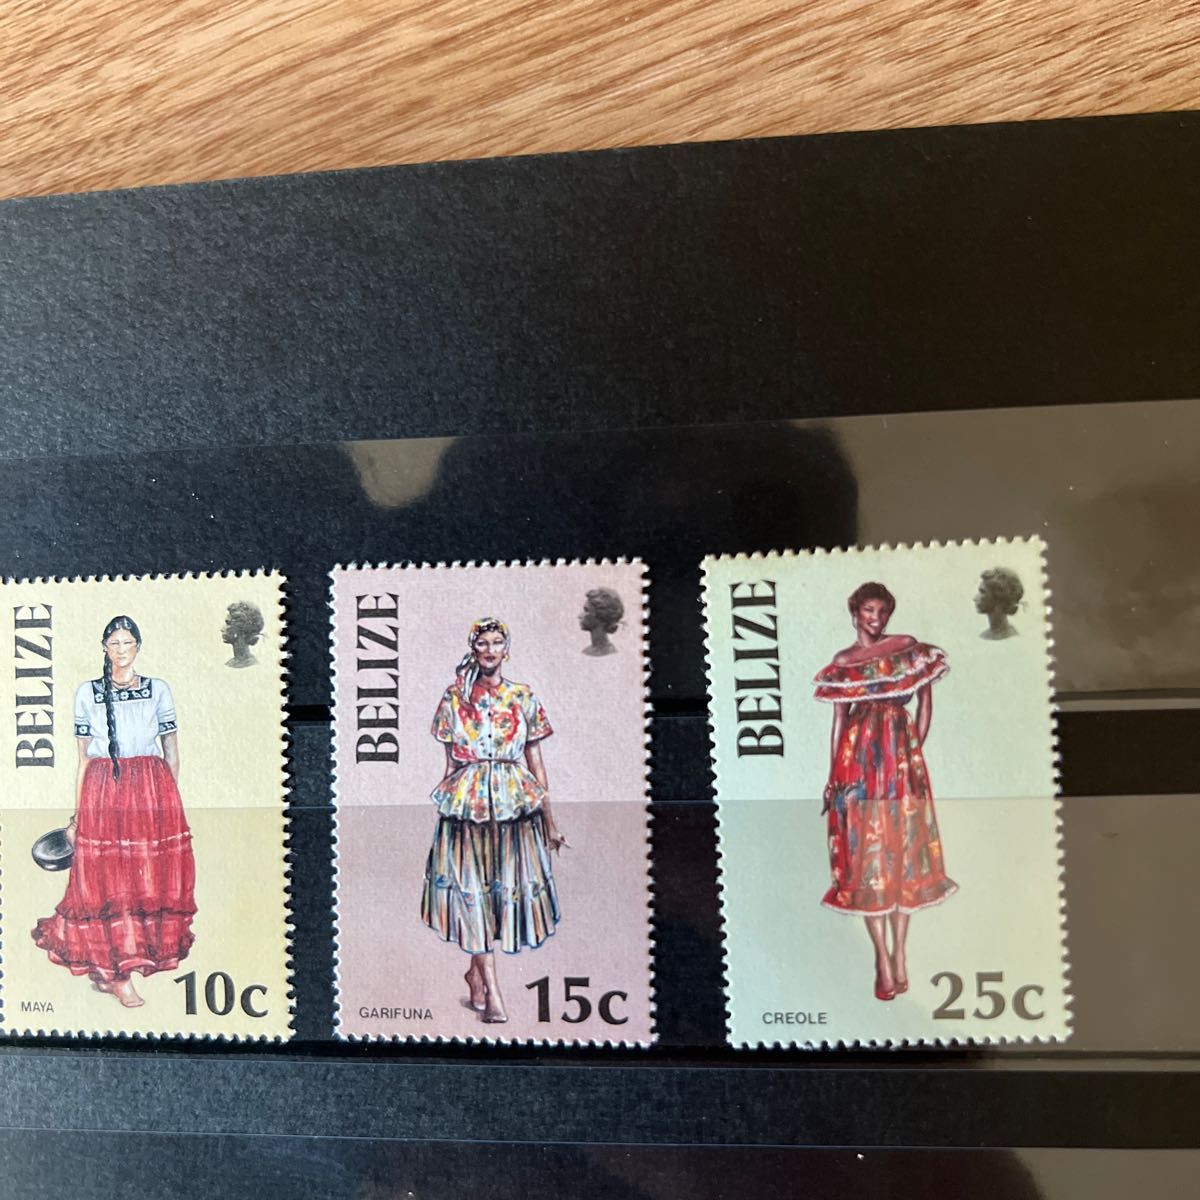 外国民族衣装切手 世界の民族衣装8種（べリーズ）。 モンゴル民族衣装7種。未使用